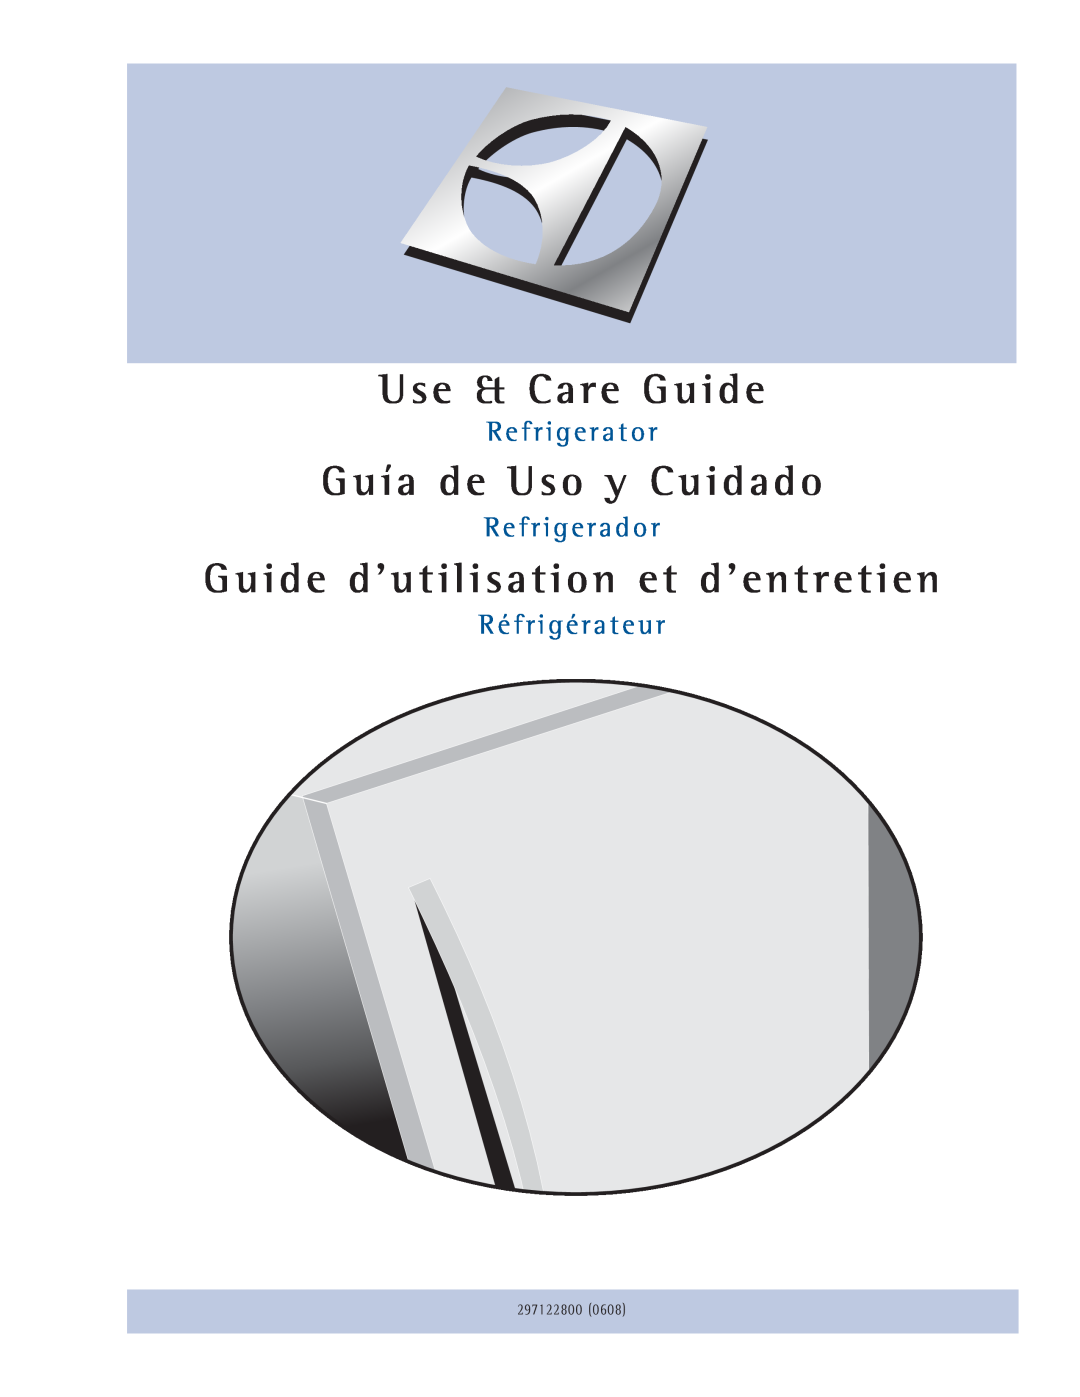 Electrolux Refrigerator manual Use & Care Guide, Guía de Uso y Cuidado, Guide d’utilisation et d’entretien, 297122800 